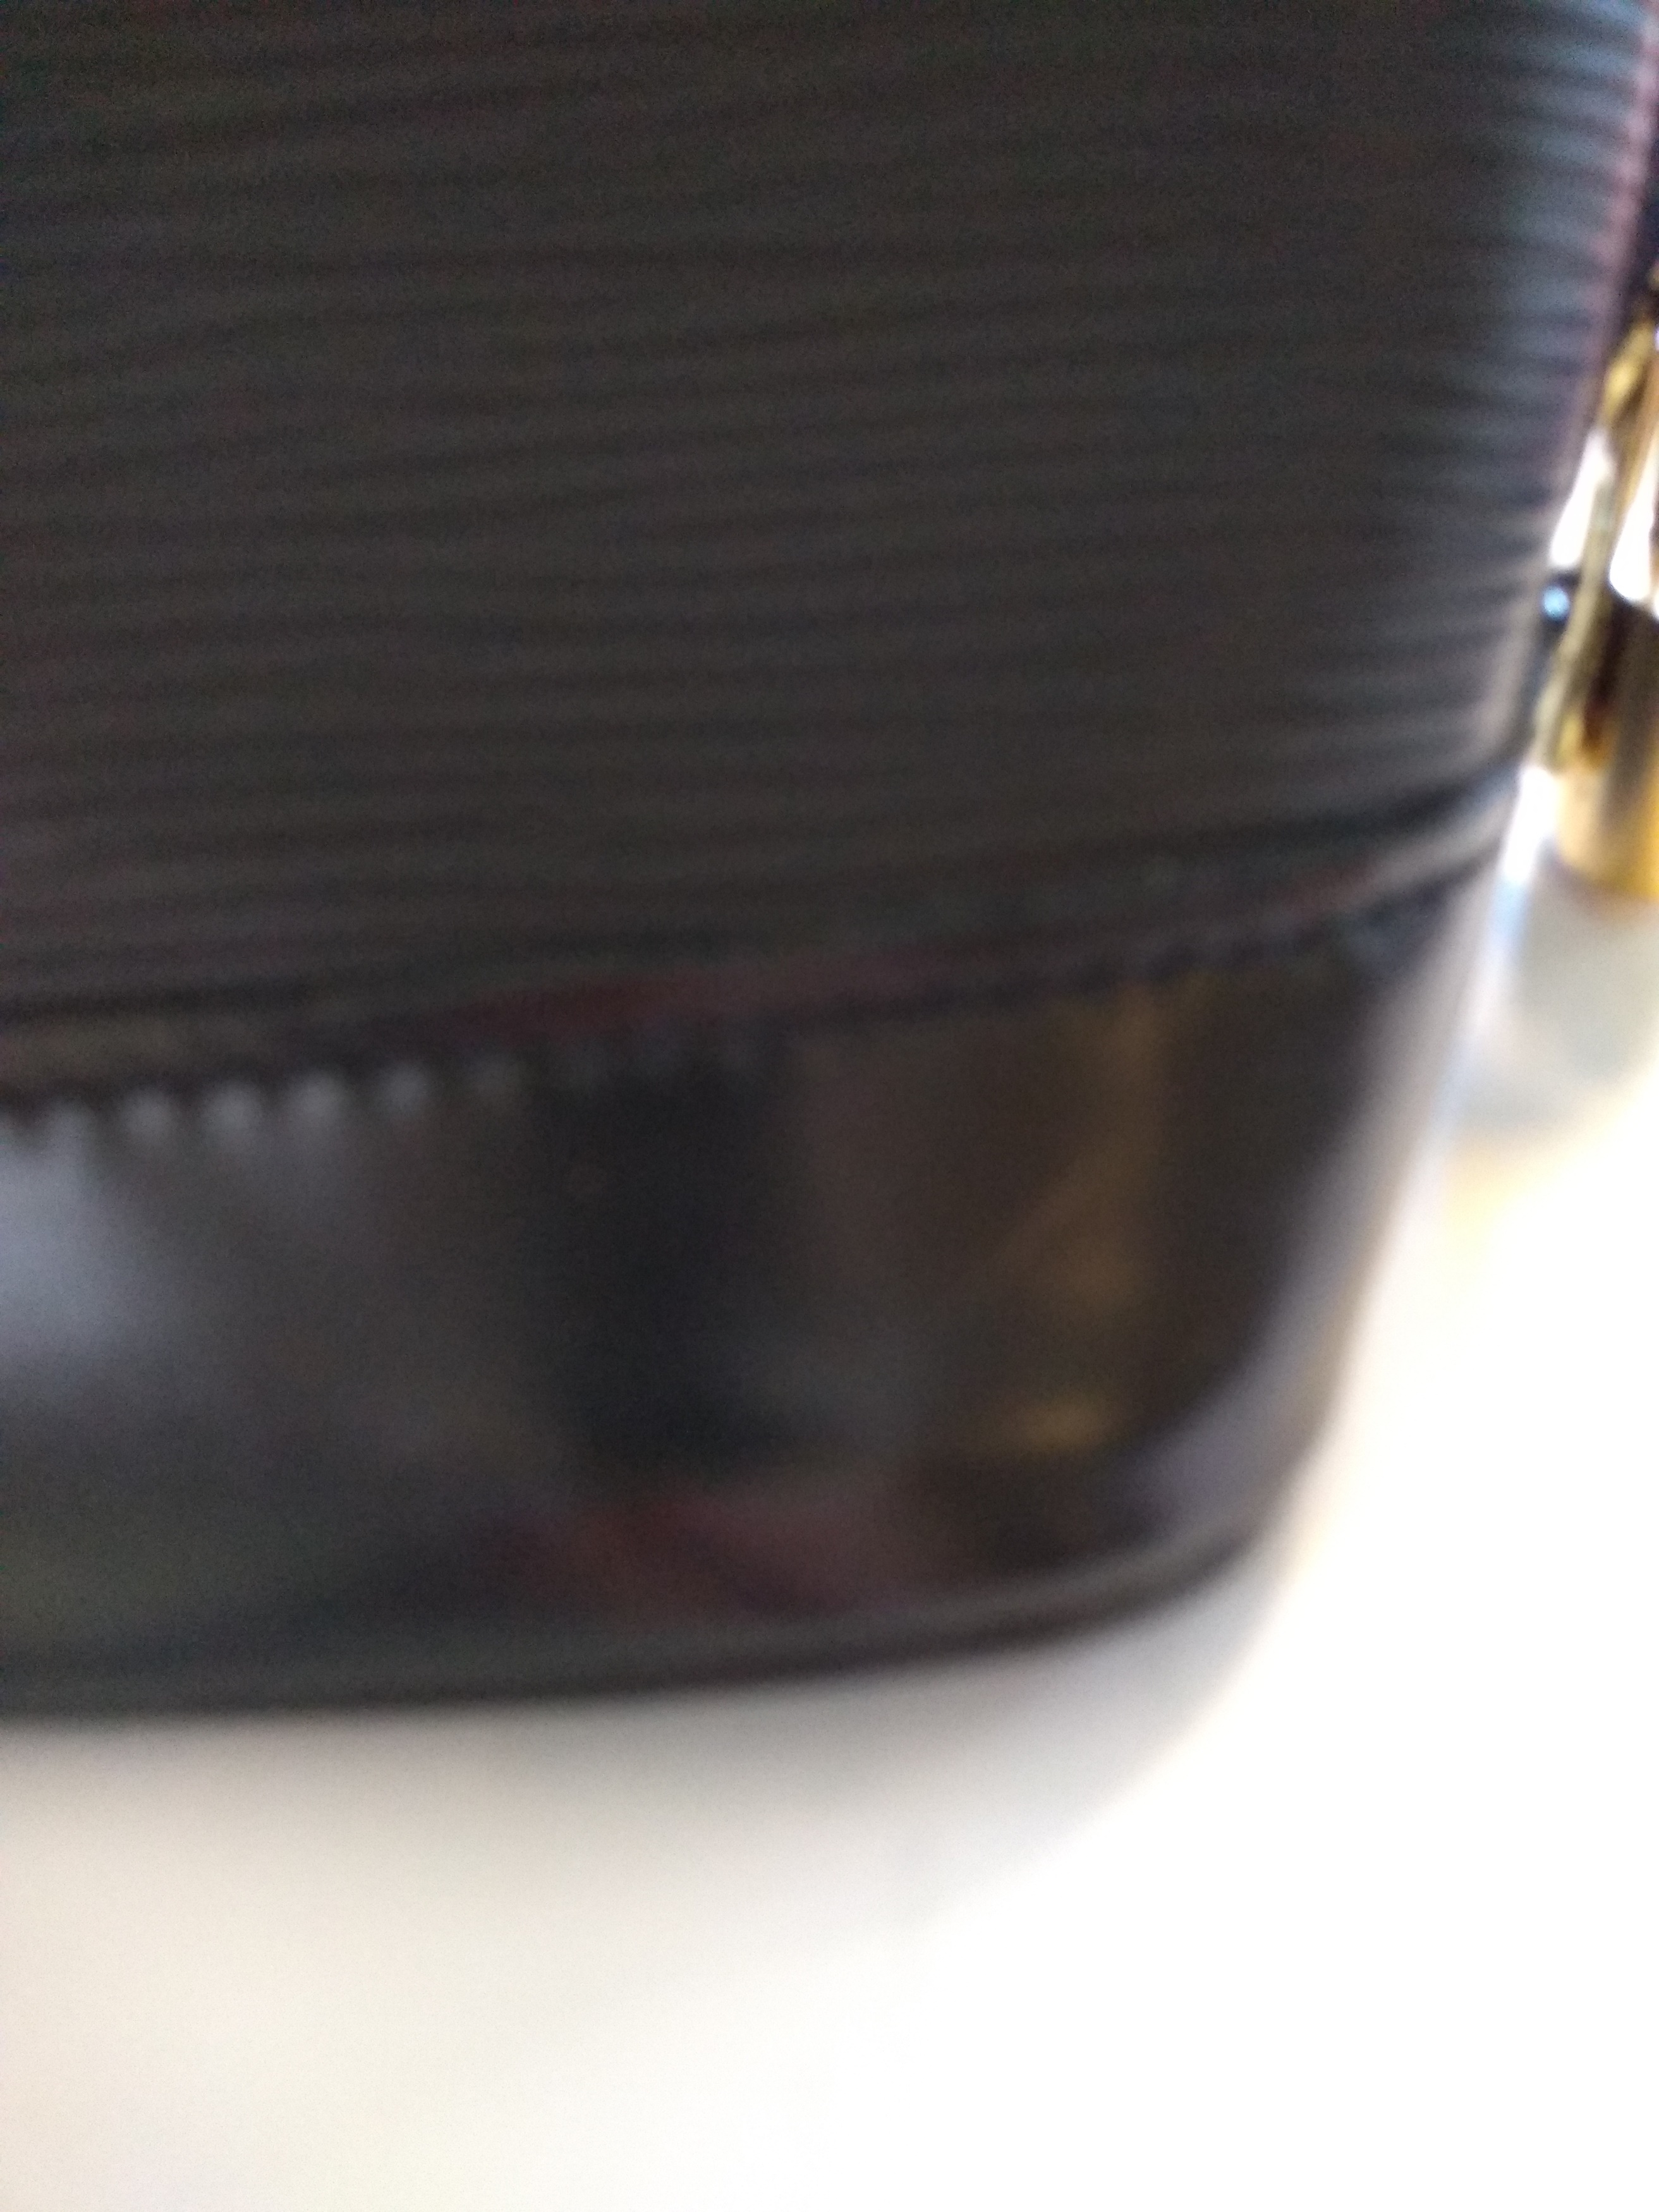 At Auction: A Louis Vuitton Black Ombre Bag. Epi leather exterior